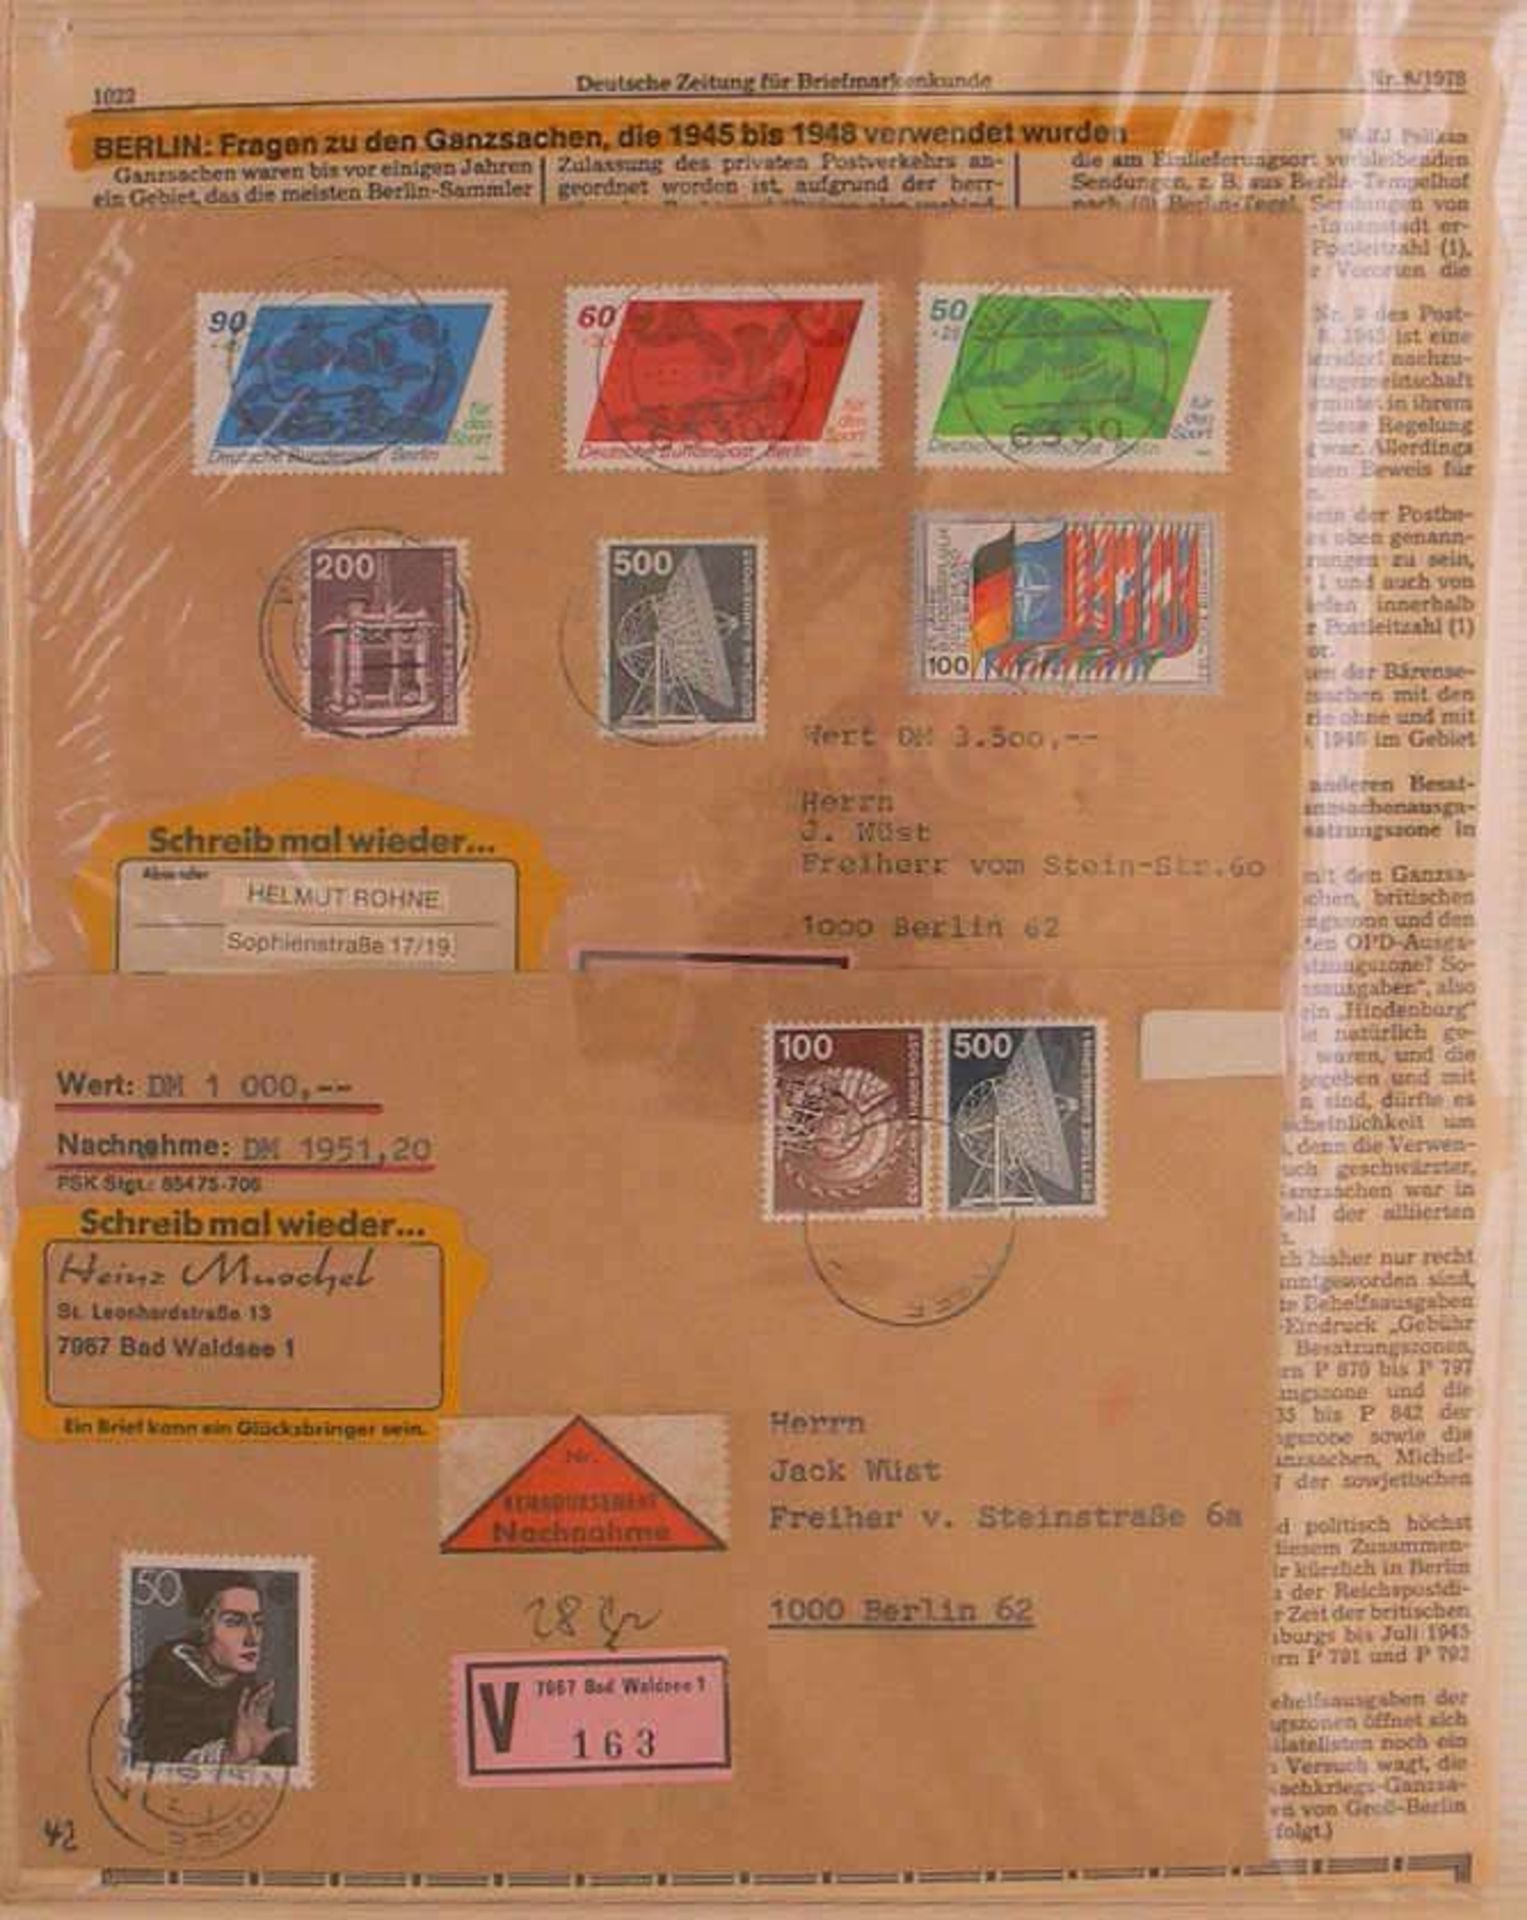 Reserve: 50 EUR        Berlin, 1979-82, interessante Sammlung im Album zum Thema "Schreib mal